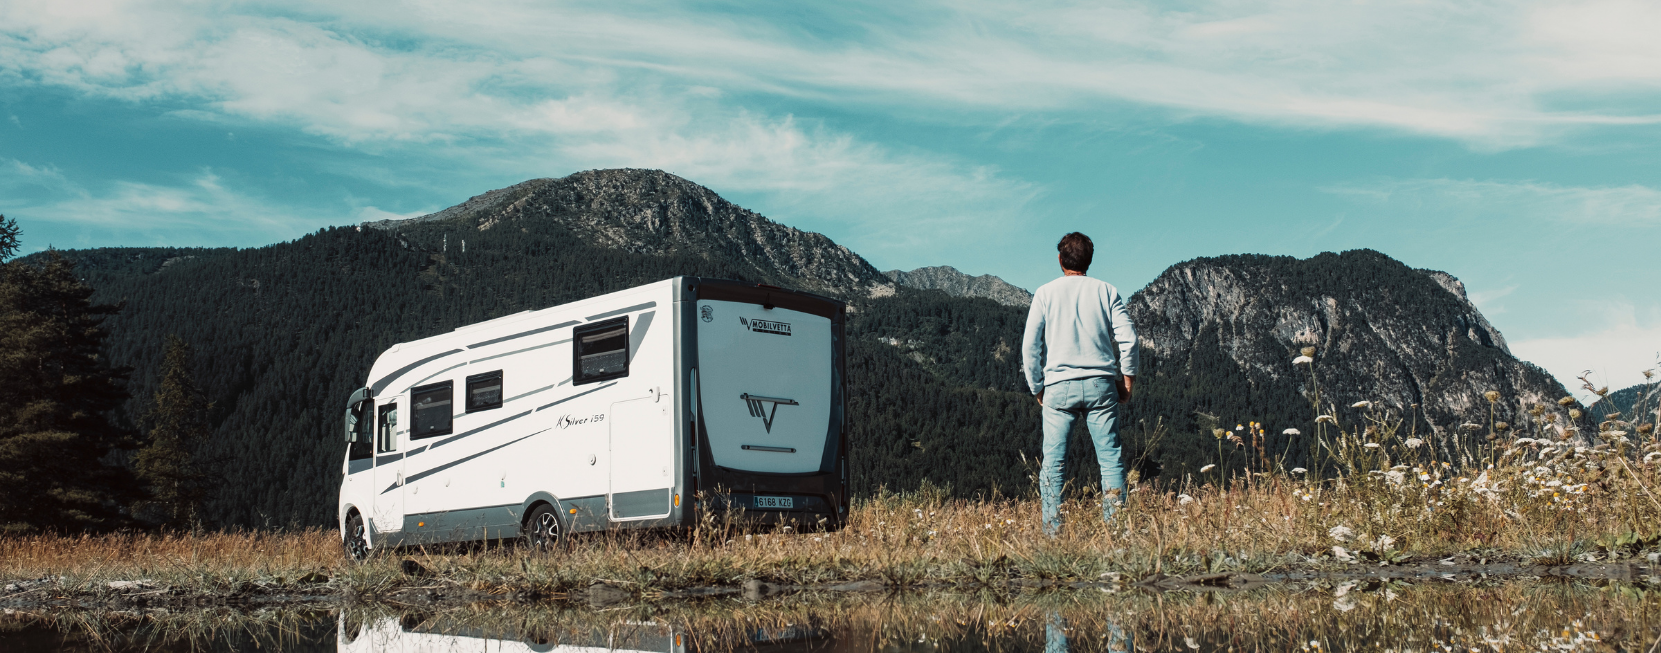 Bien choisir la caméra de recul de votre camping-car – Le Monde du